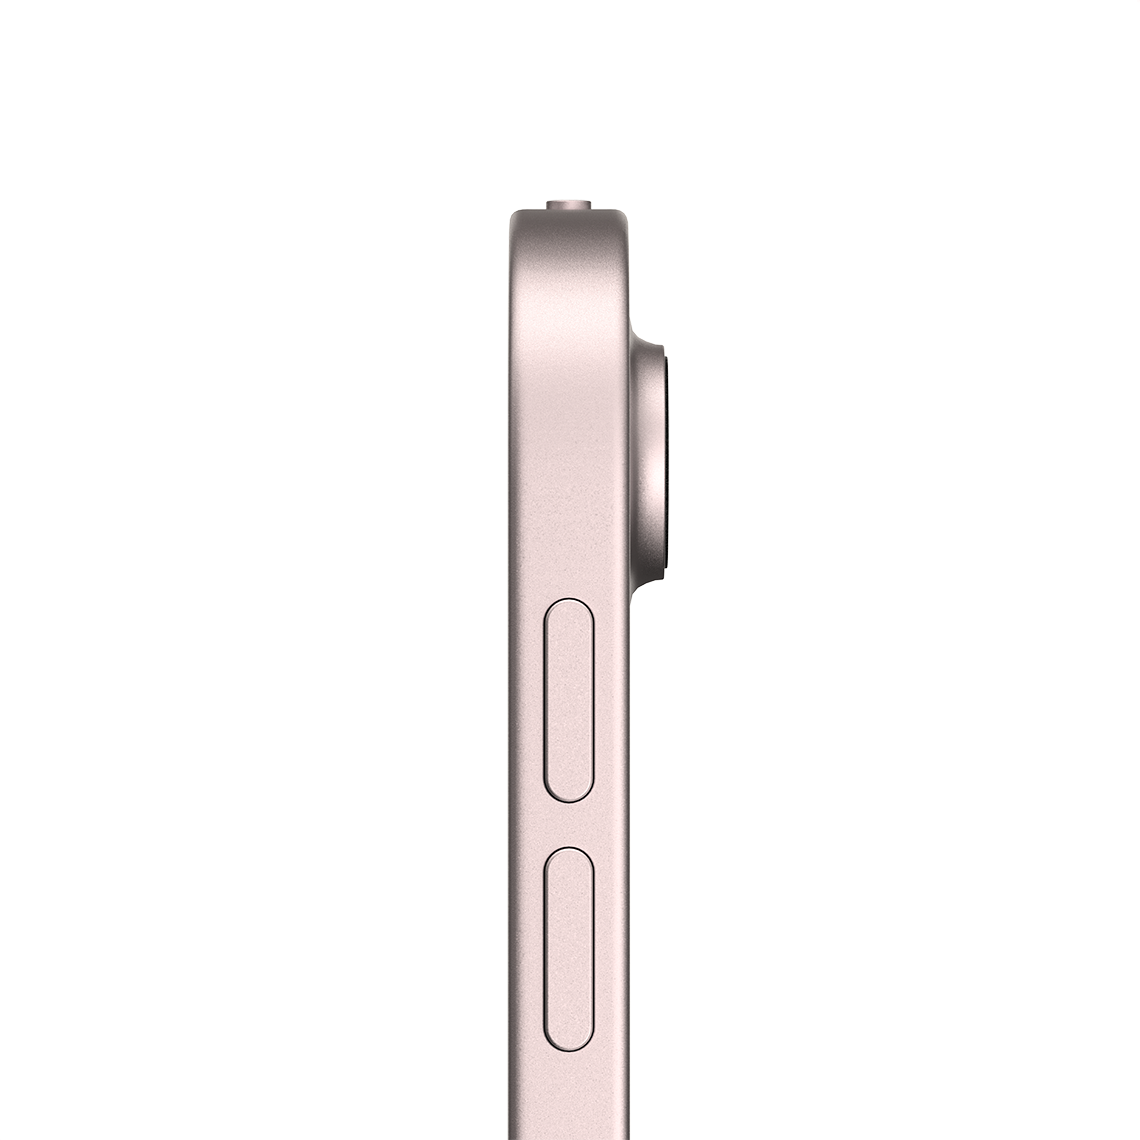 Apple iPad Air 10.9-inch 5th Generation - Pink - 256GB, Wi-Fi, Grade A